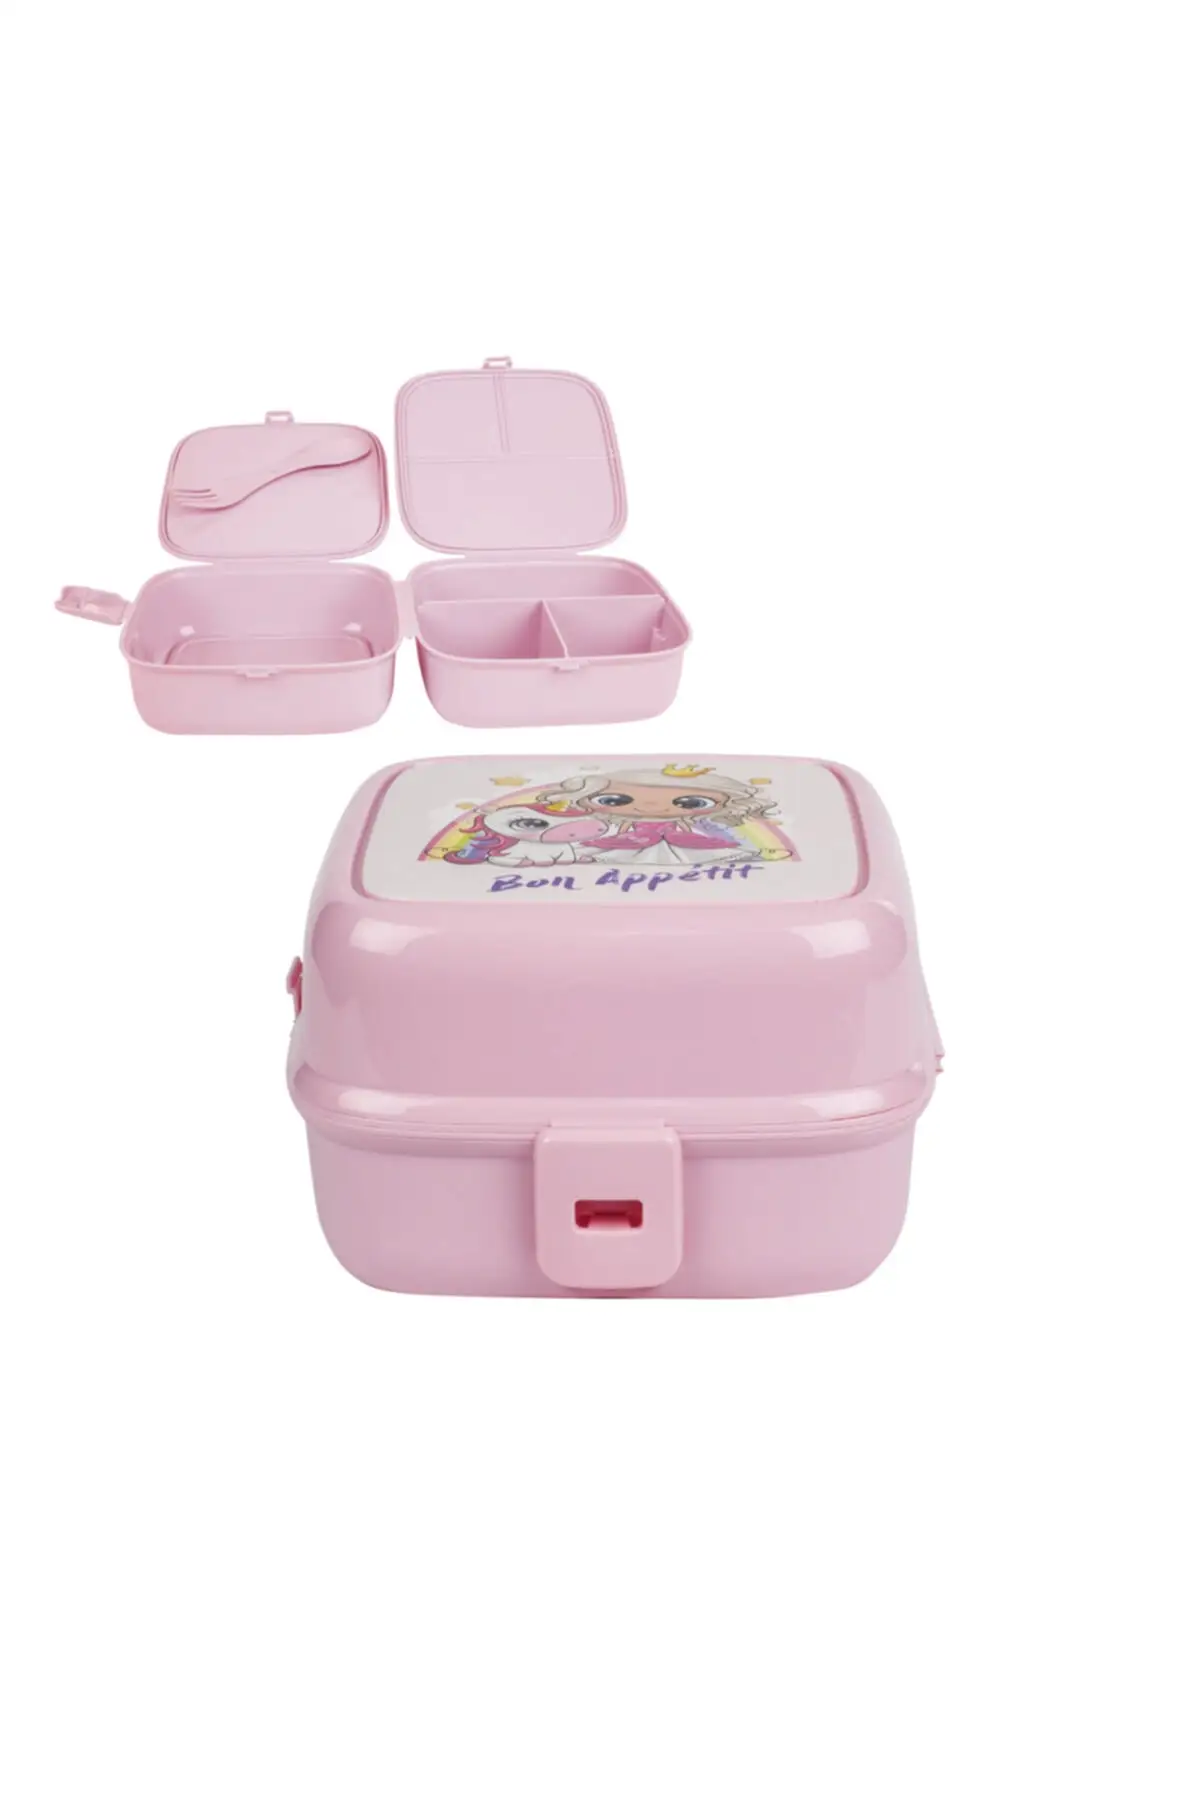 

Don't store Gondola девочка розовая коробка питание для пикника крутые дети светильник маленькие детские игрушки ежедневное использование